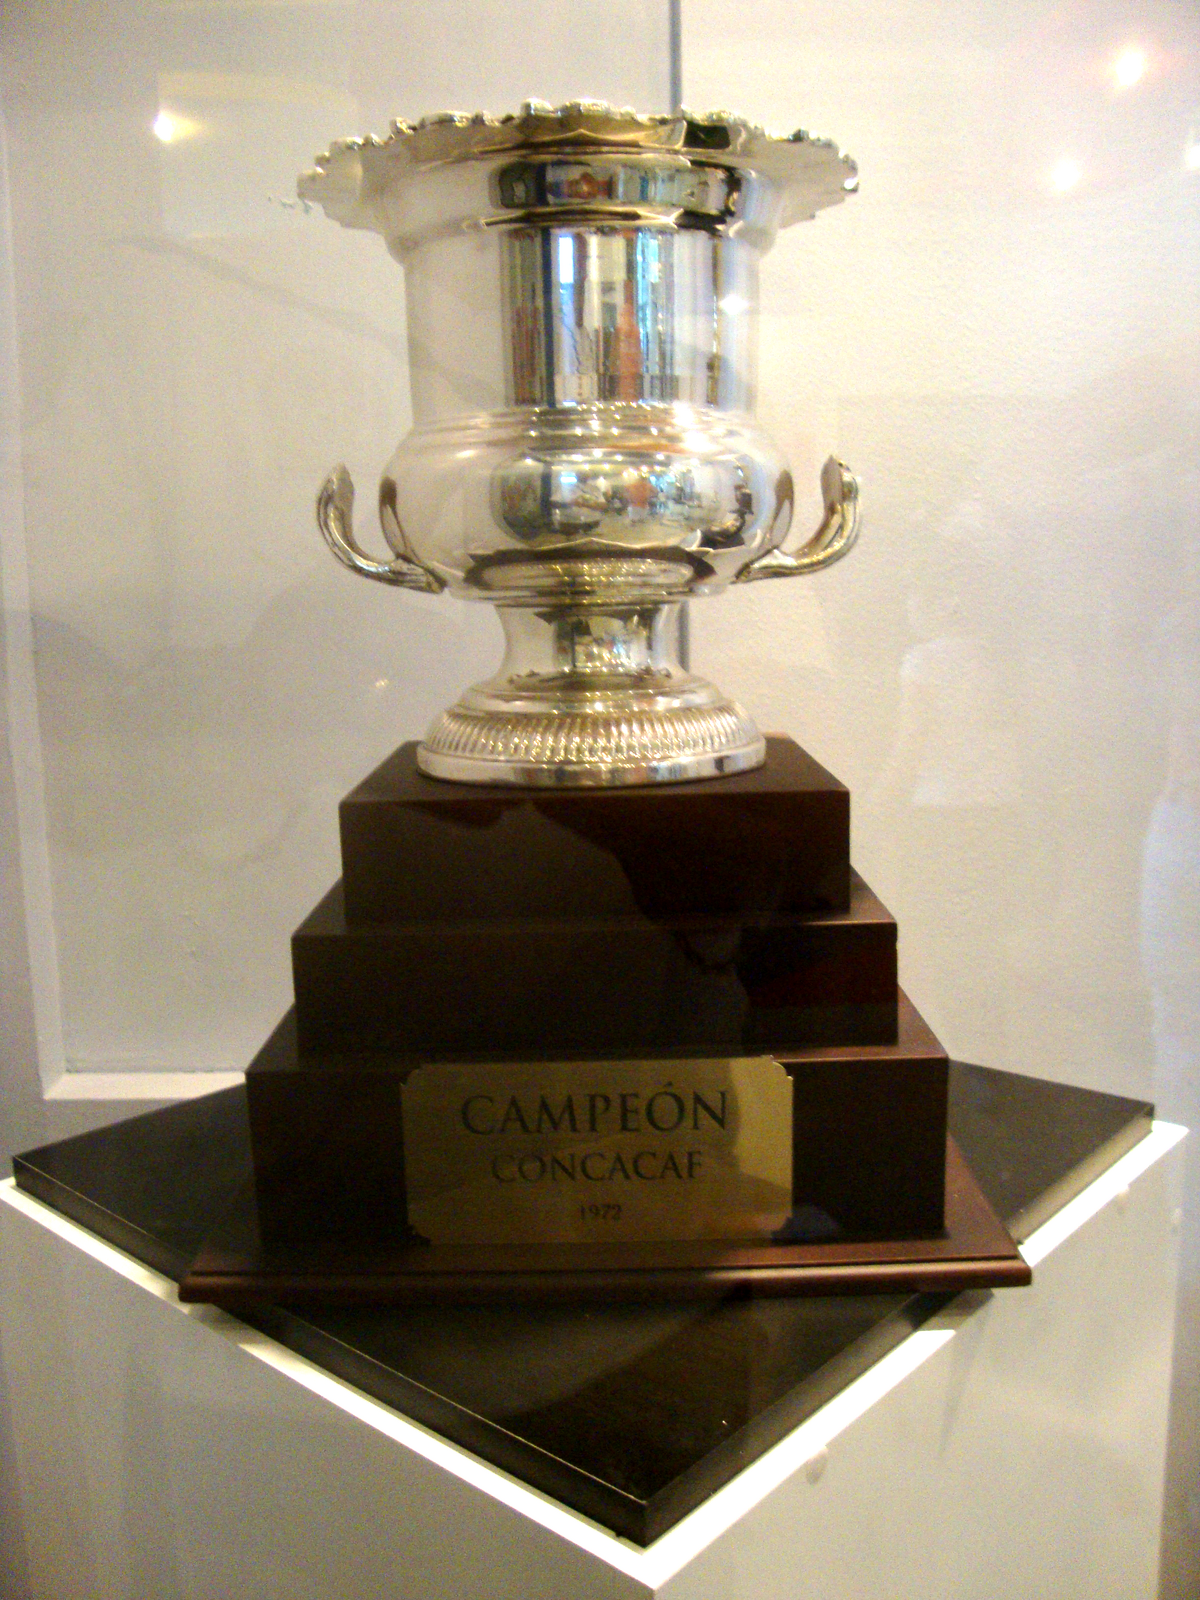 Ligue des champions de la CONCACAF 2014-2015 — Wikipédia